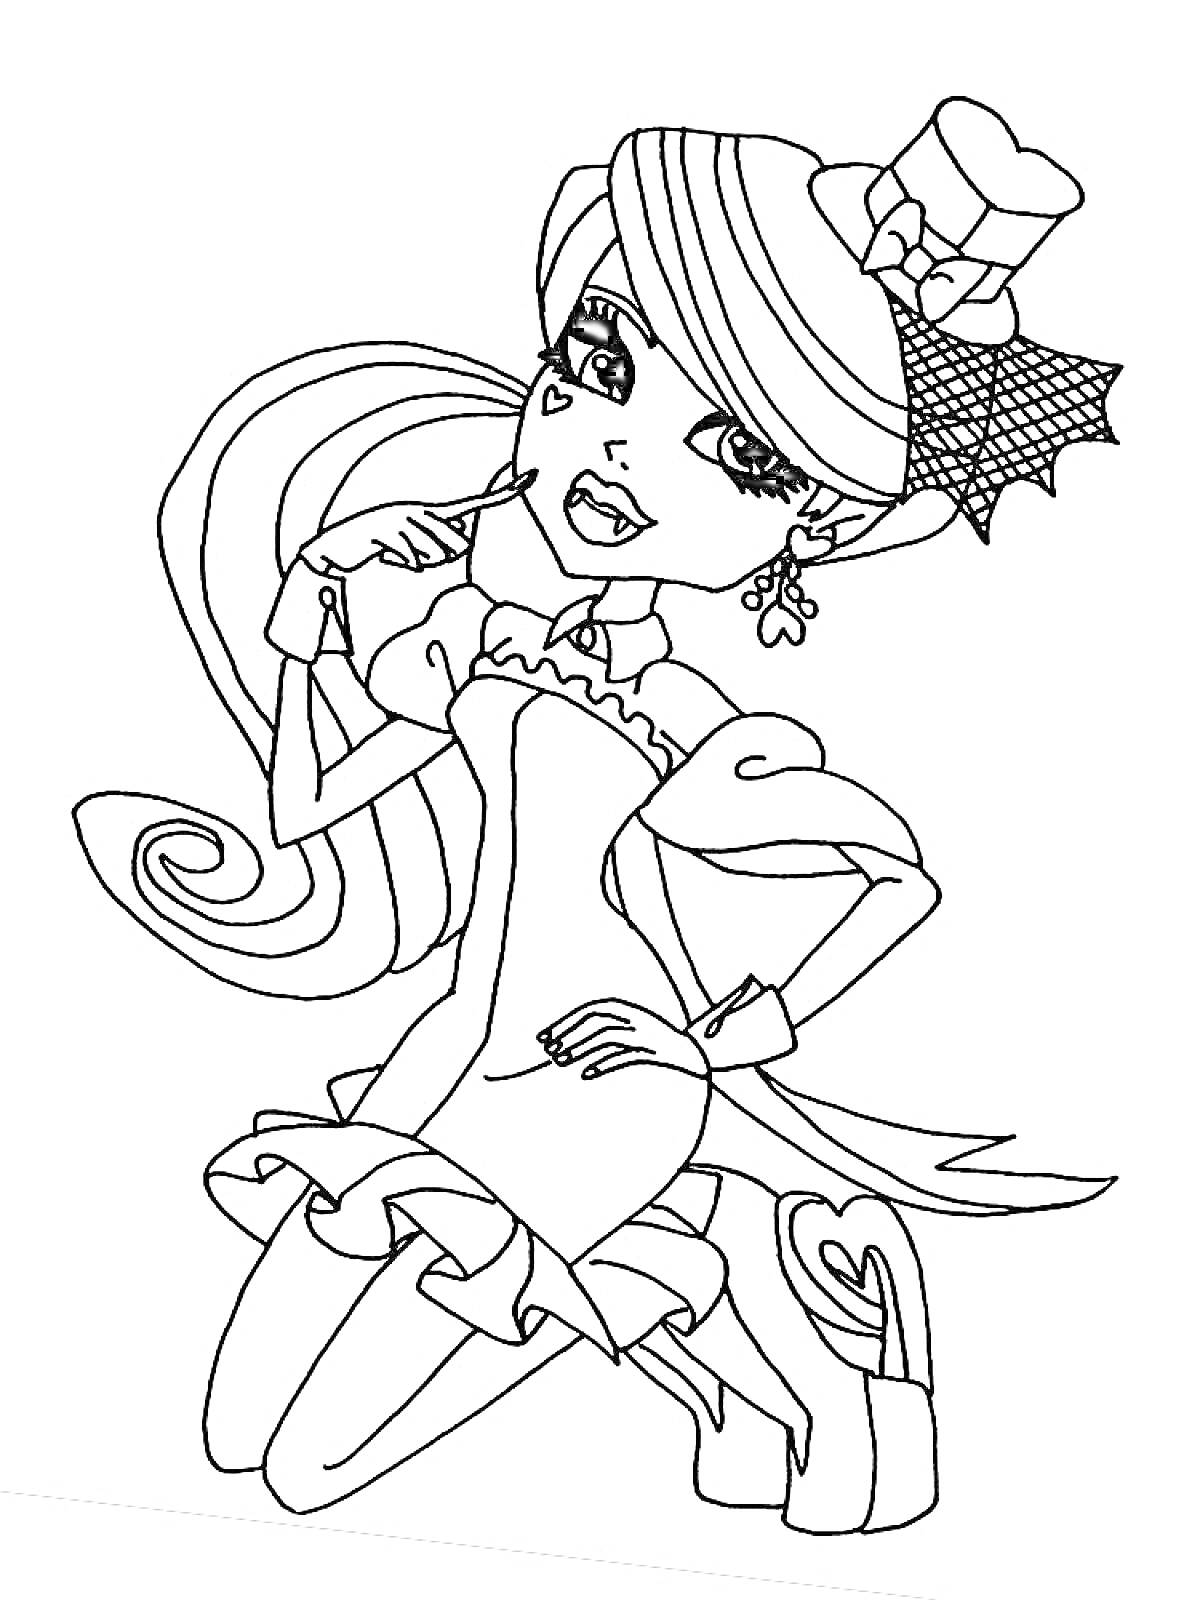 Раскраска Девушка Монстр Хай в платье с шляпой и длинными волосами